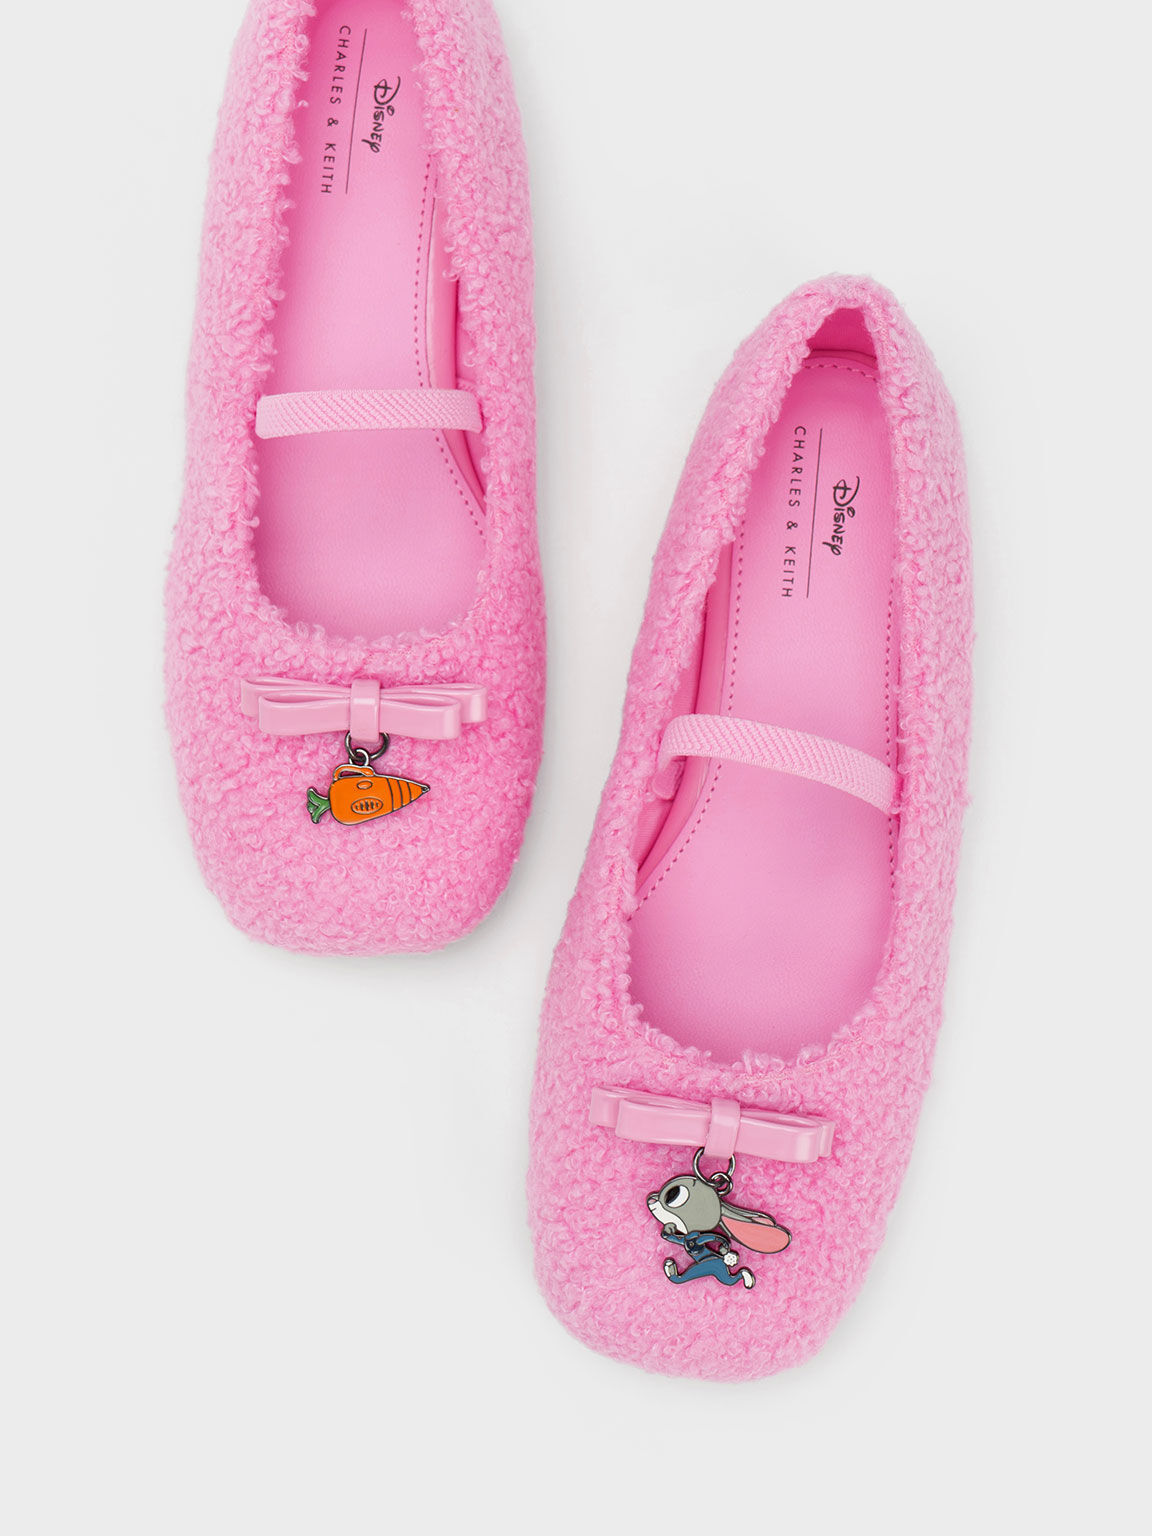 CHARLES & KEITH 迪士尼《動物方城市》系列：哈茱蒂兒童絨毛芭蕾舞鞋, 粉紅色, hi-res